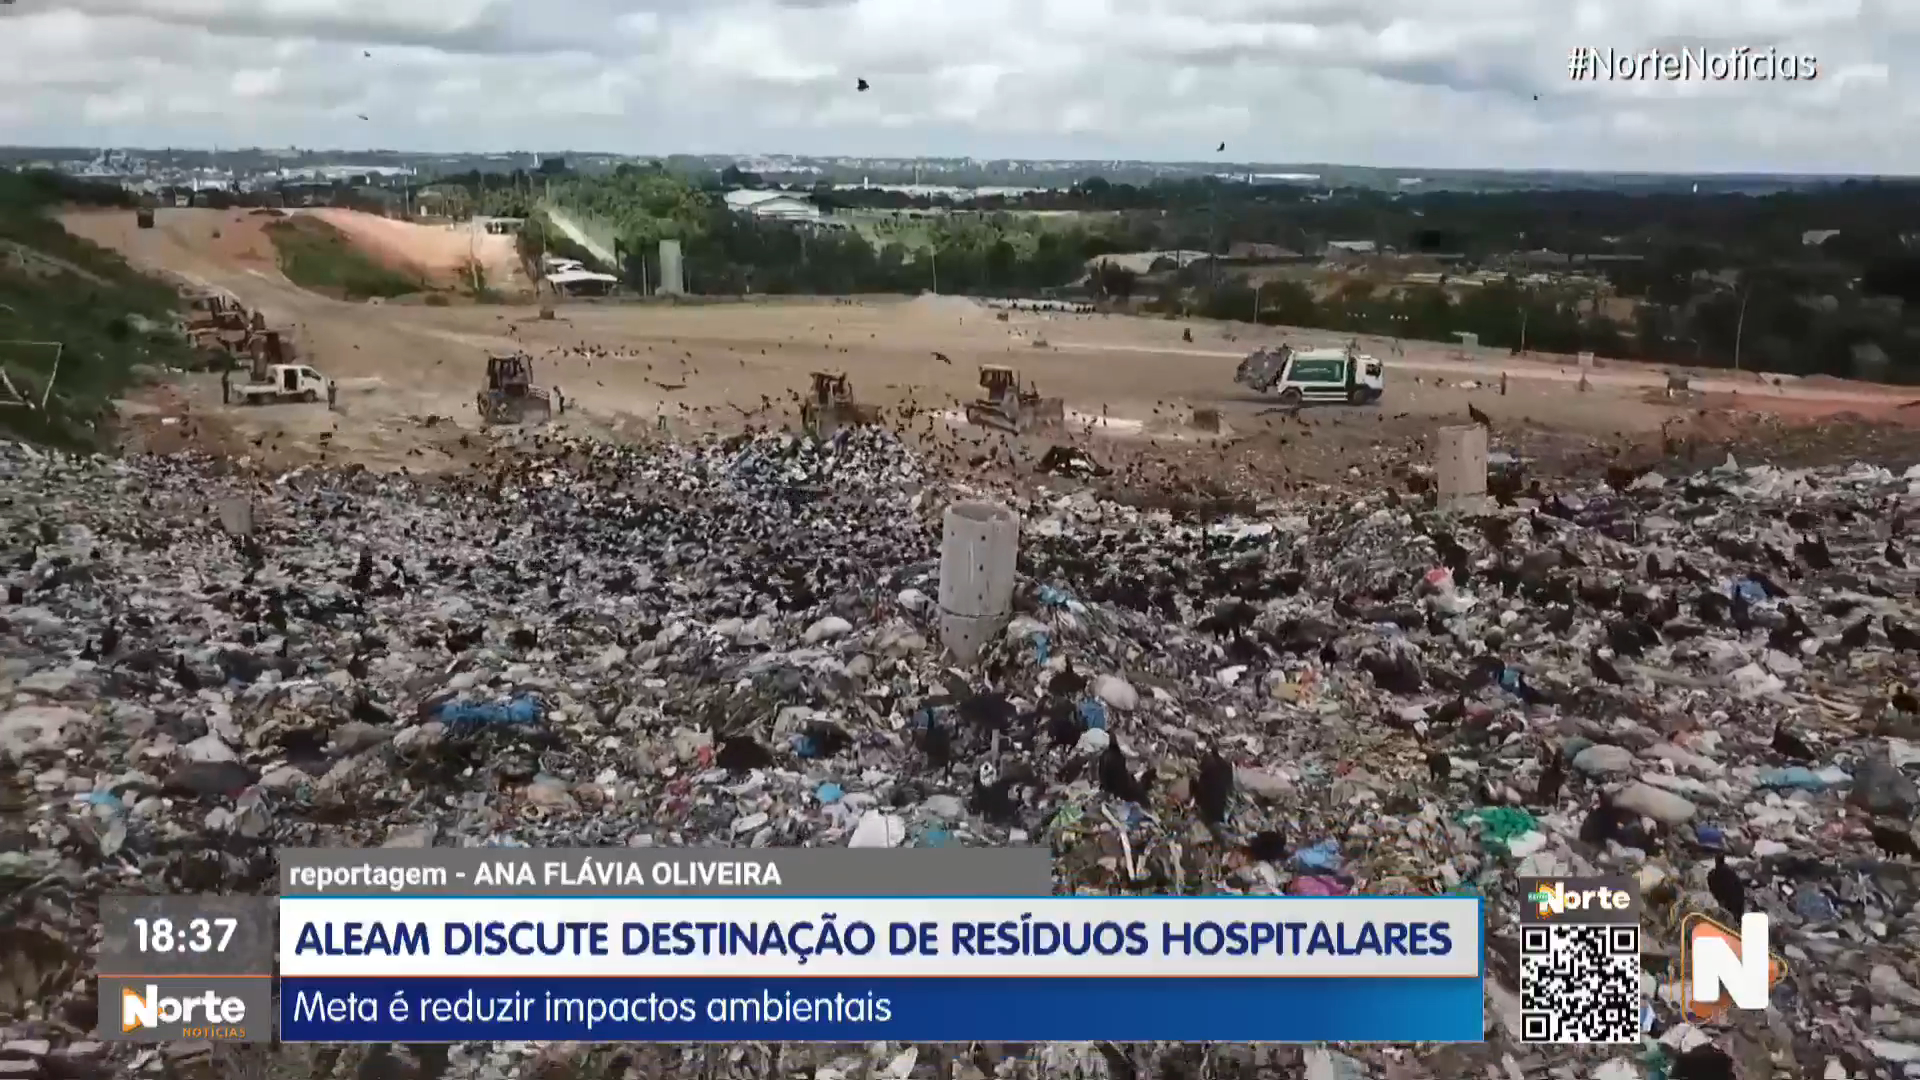 VÍDEO: Aleam discute destinação de resíduos hospitalares em Manaus